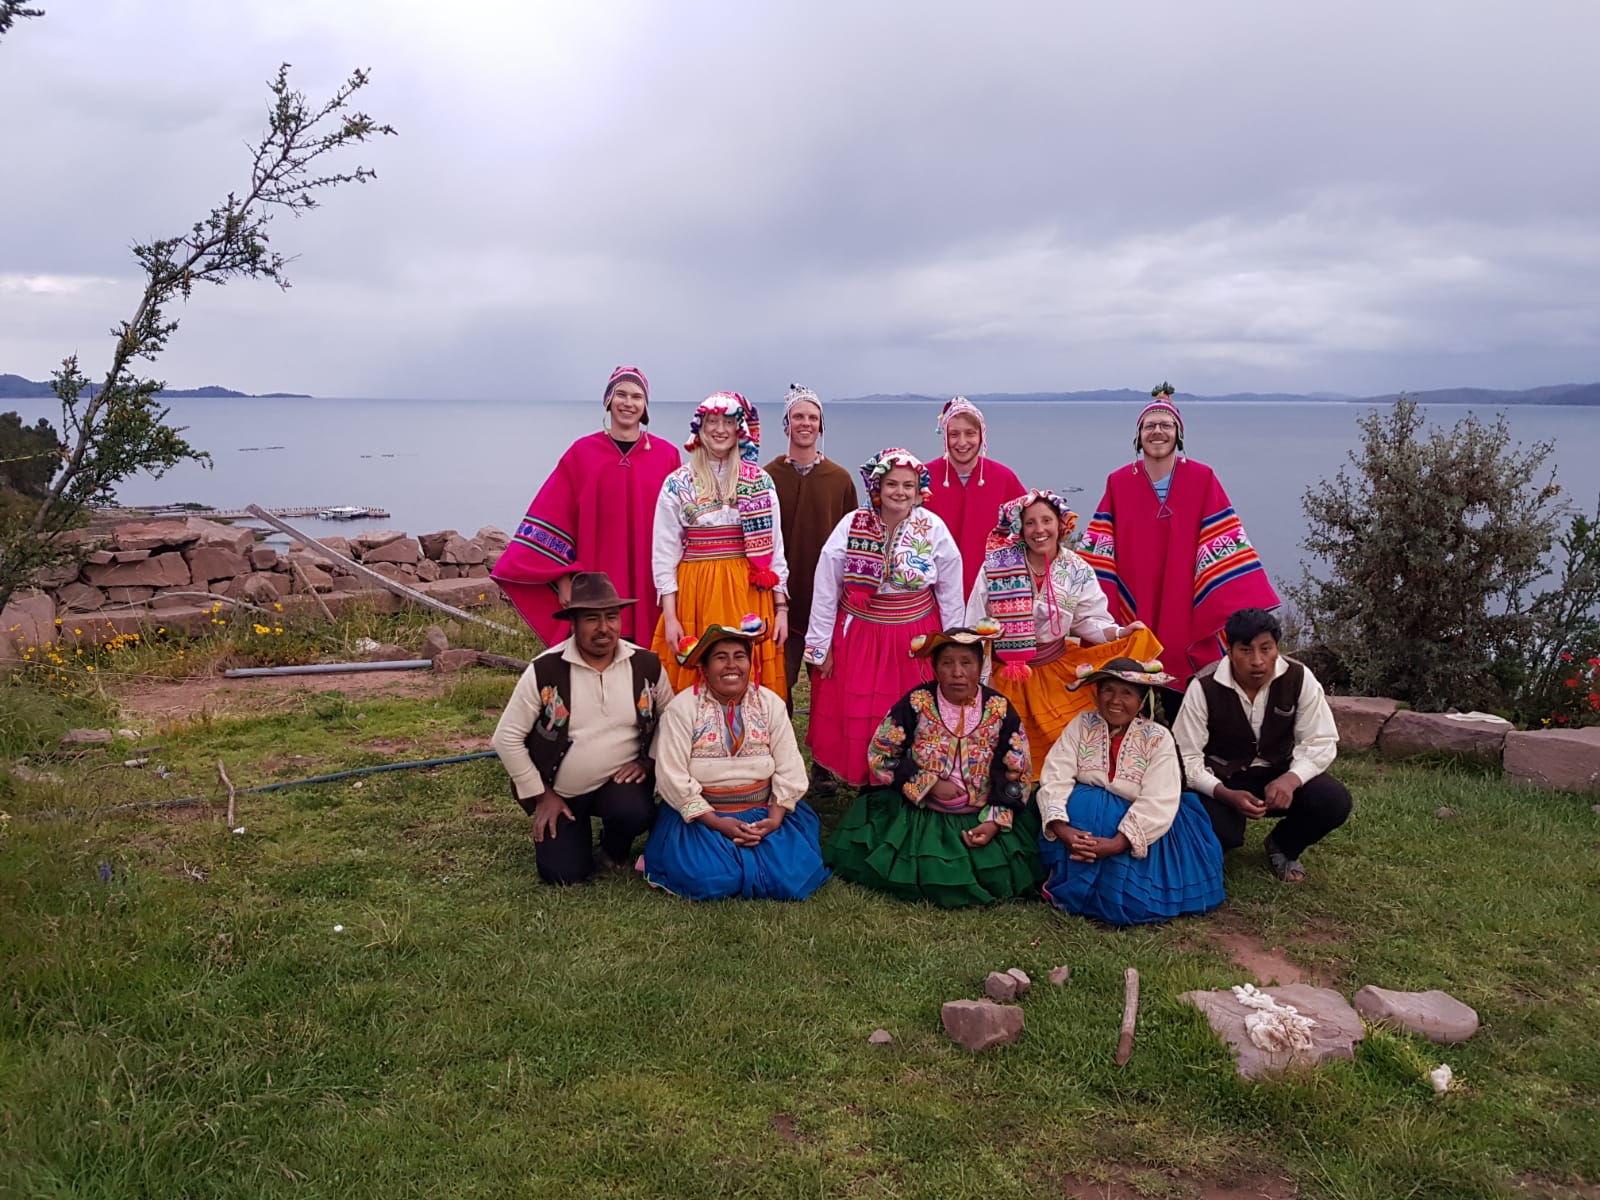 Zusammen mit den Uros - dem indigenen Volk des Titicacasees.